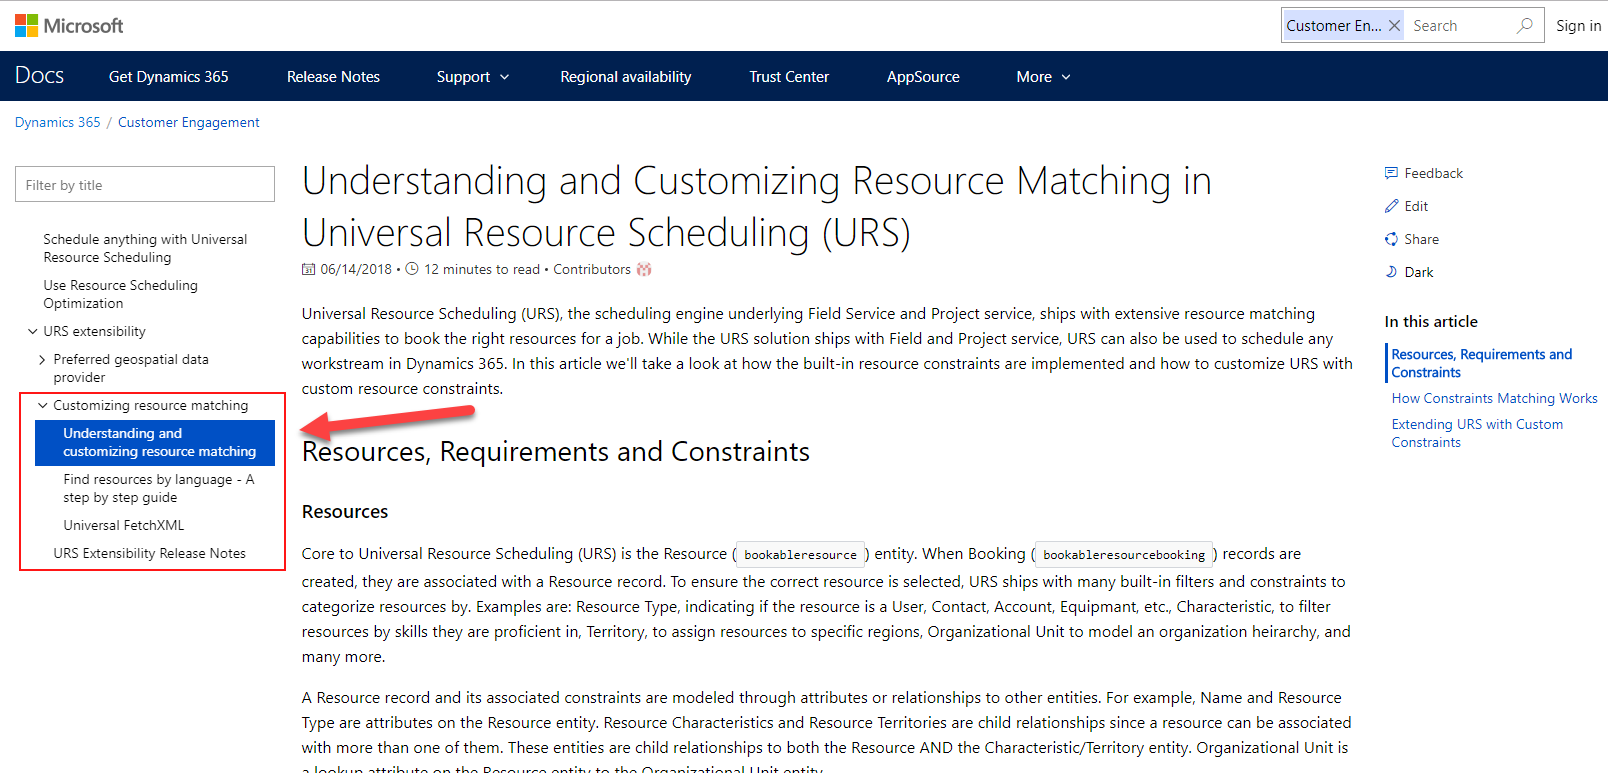 Universal Resource Scheduling documentation